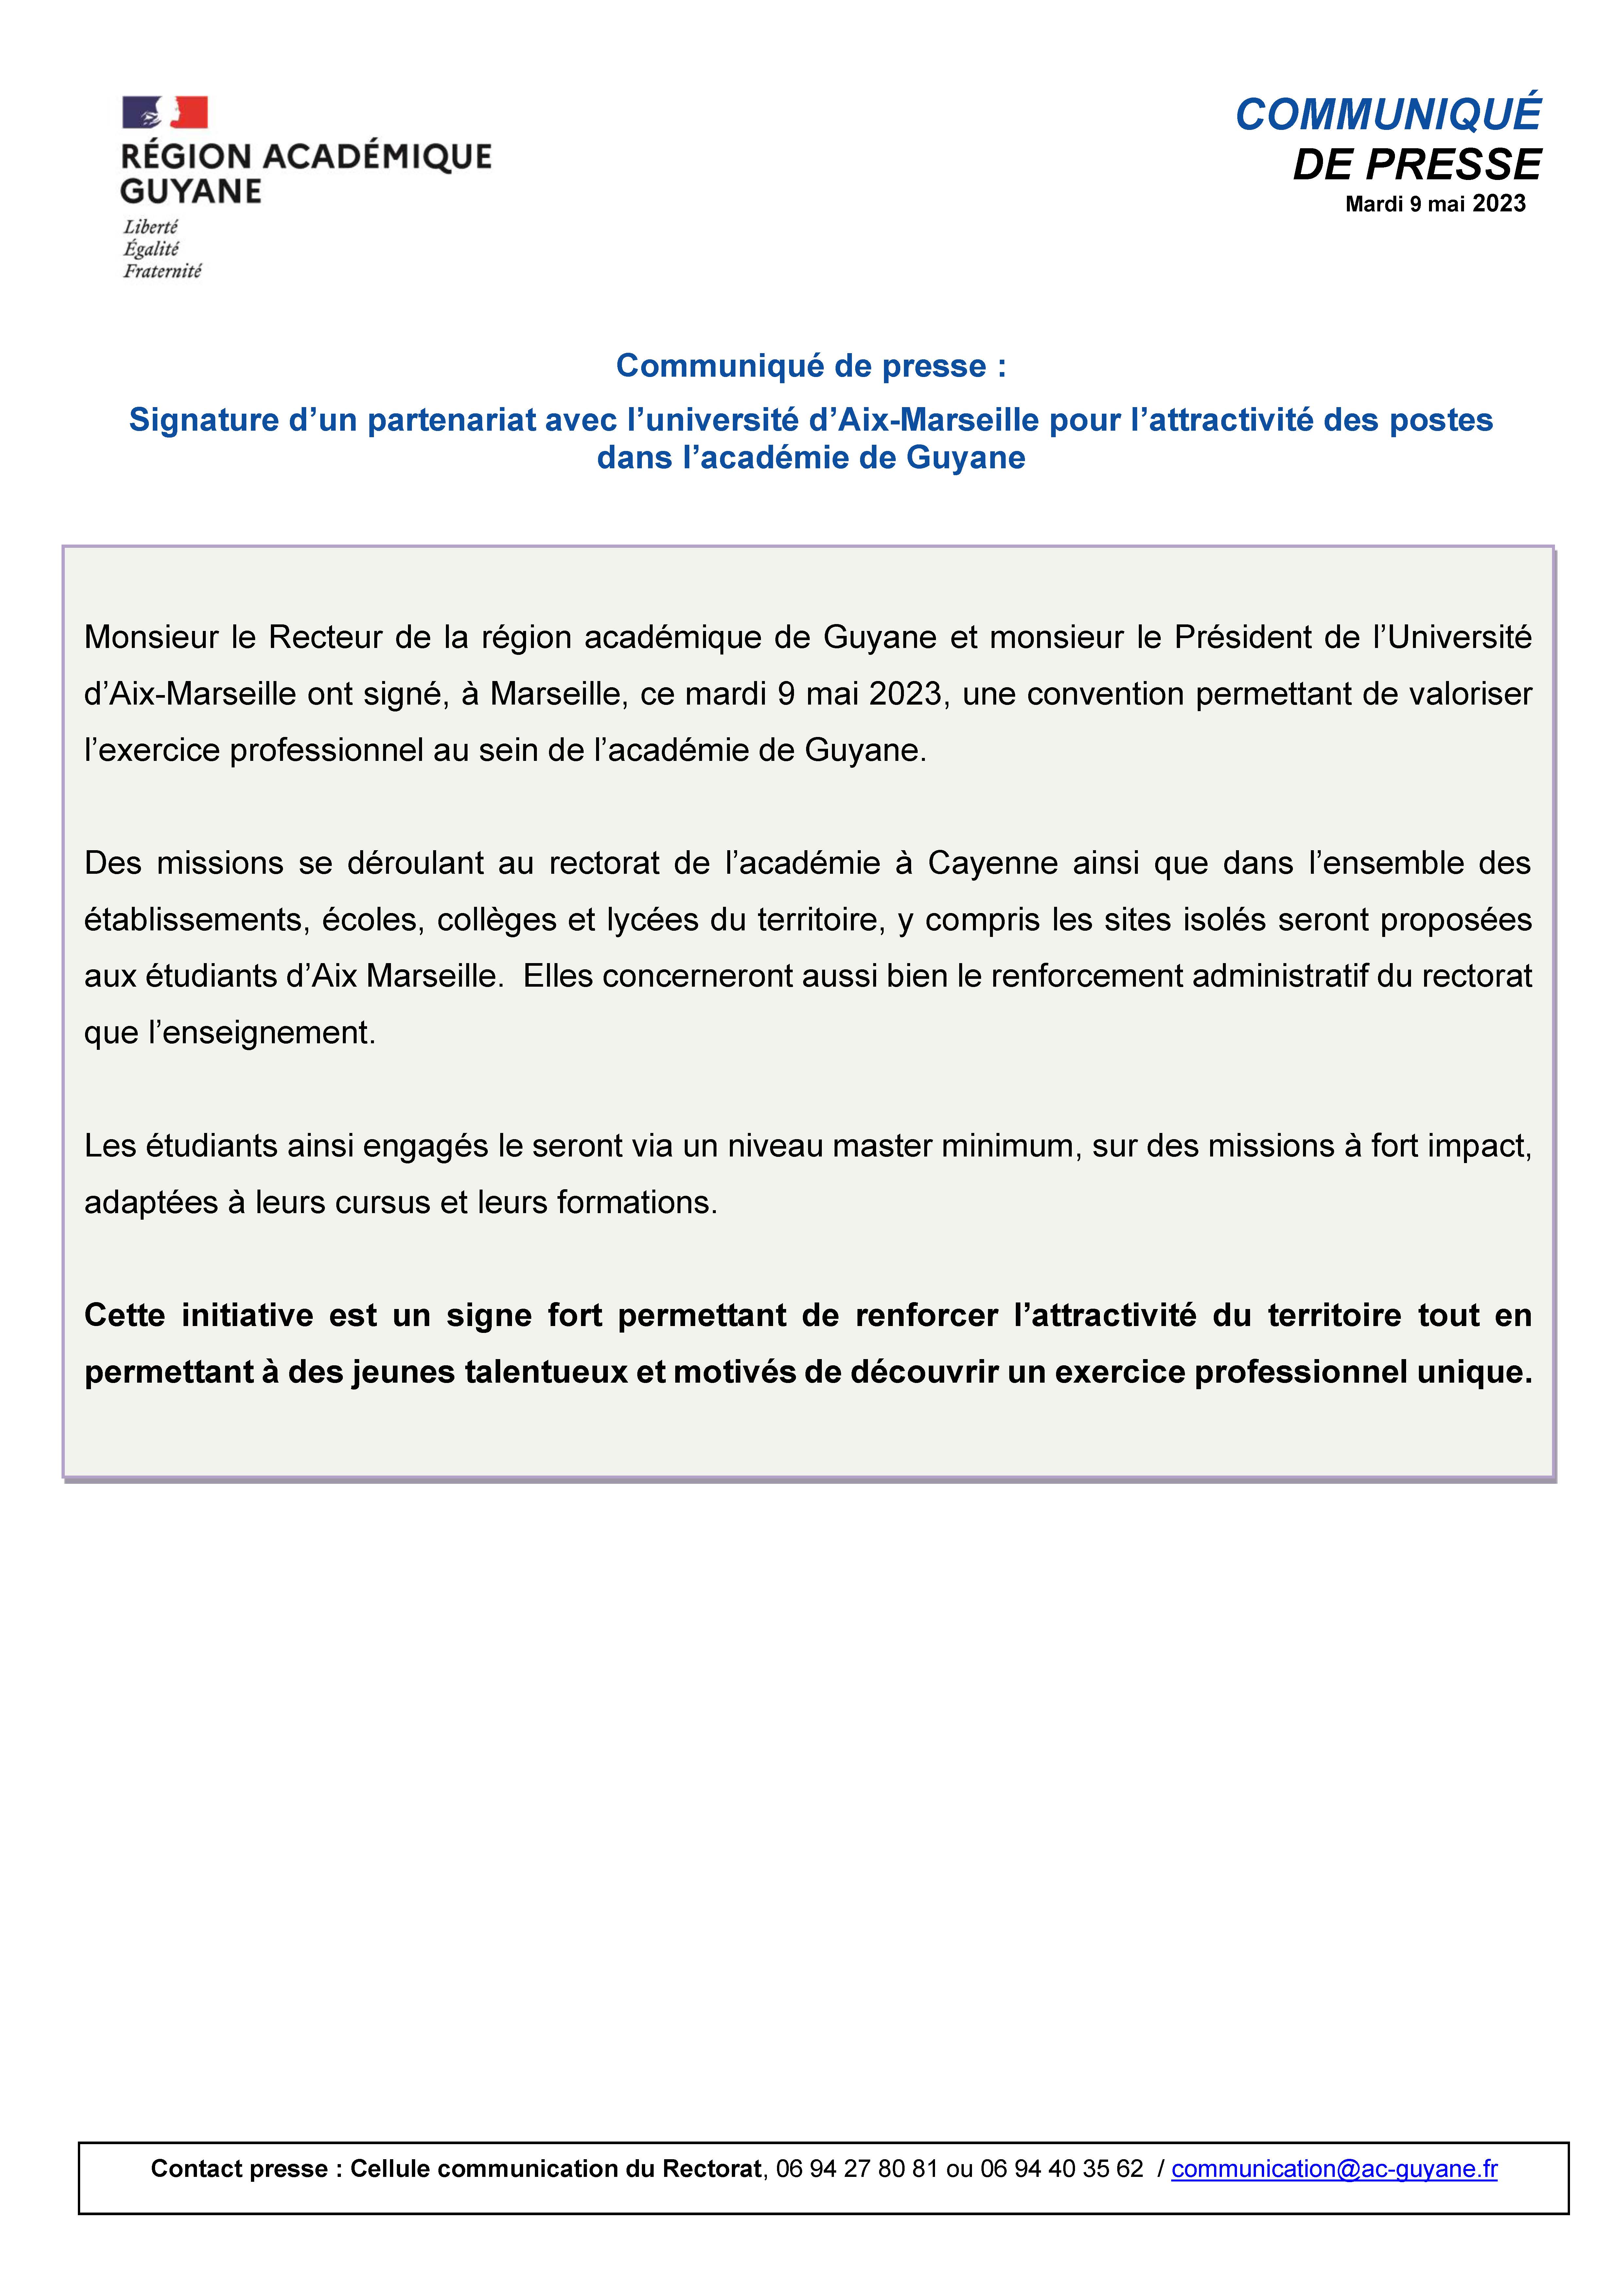 [CP] Signature d’un partenariat avec l’université d’Aix-Marseille pour l’attractivité des postes dans l’académie de Guyane